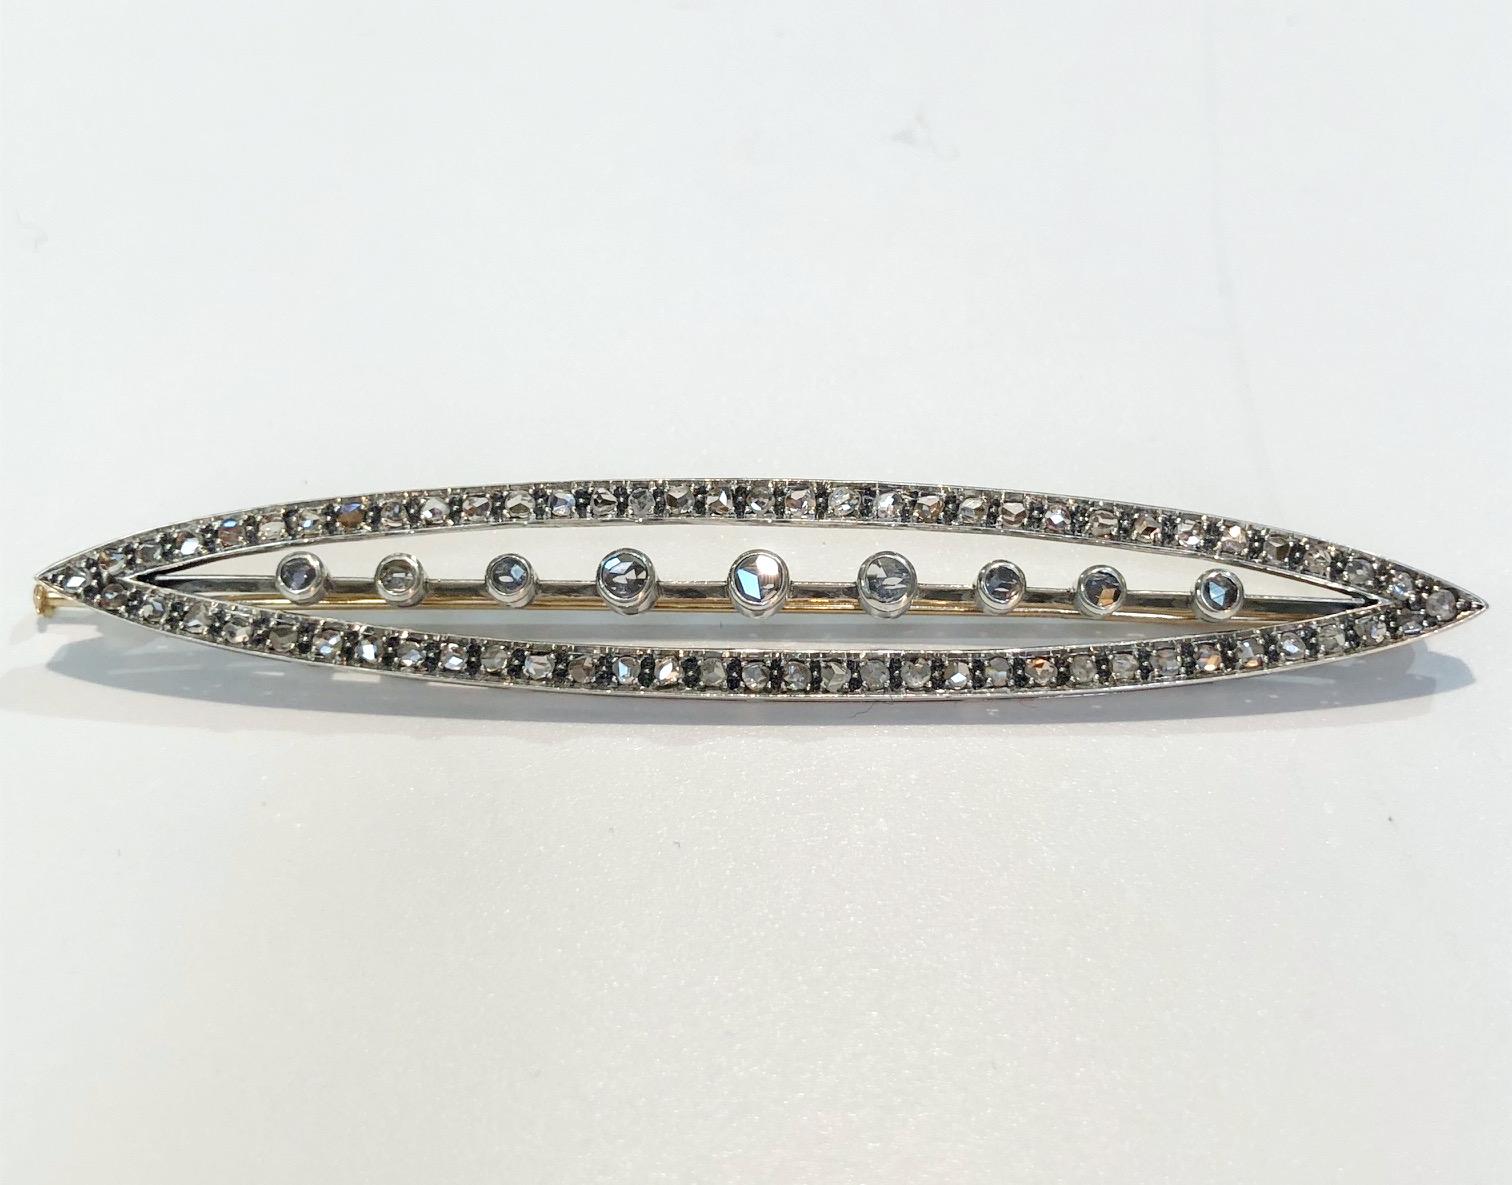 Vintage-Bar-Brosche mit Silber, Gold und Diamanten, Italien ca. Ende 1800 
Länge 8 cm
Breite 1,7 cm